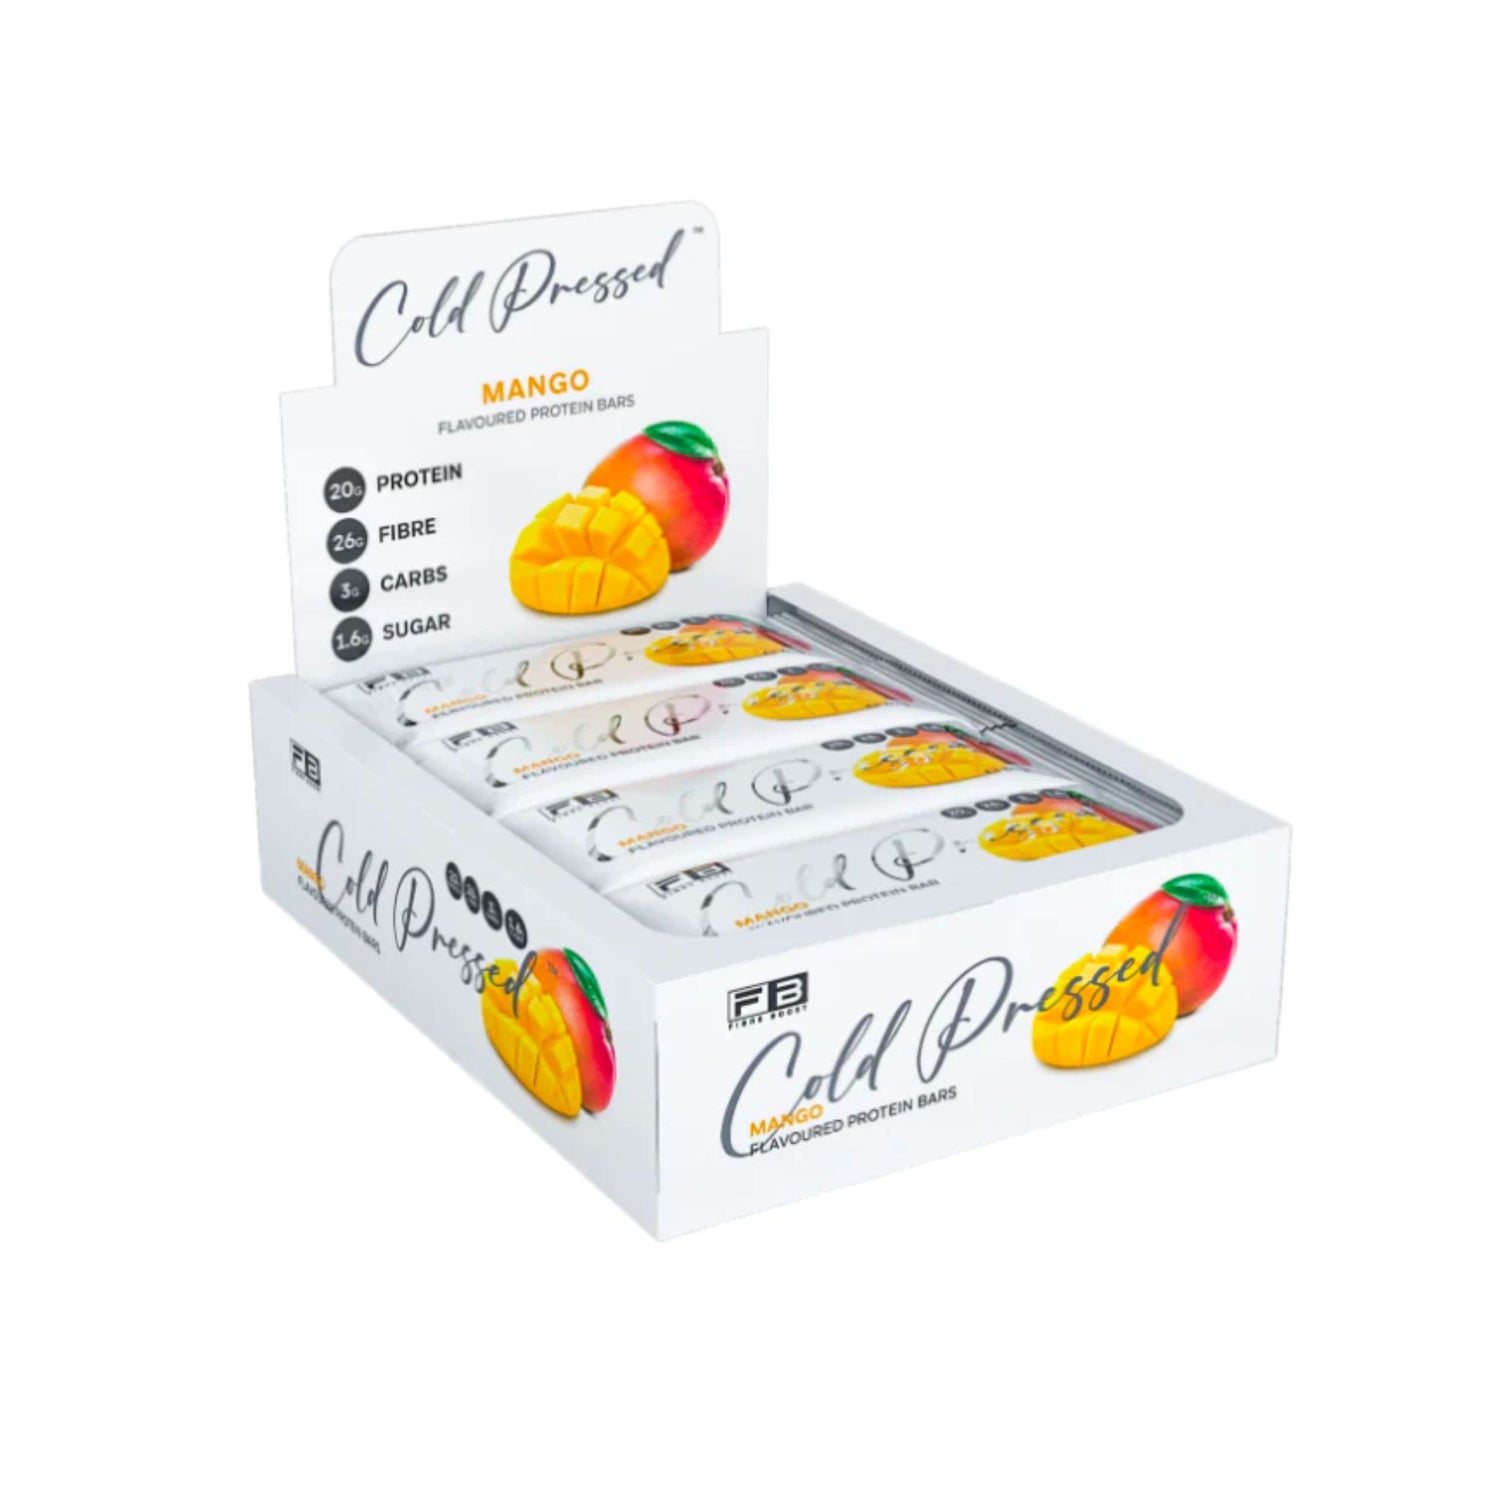 Fibre Boost Cold Pressed Bars - Box of 12 Mango